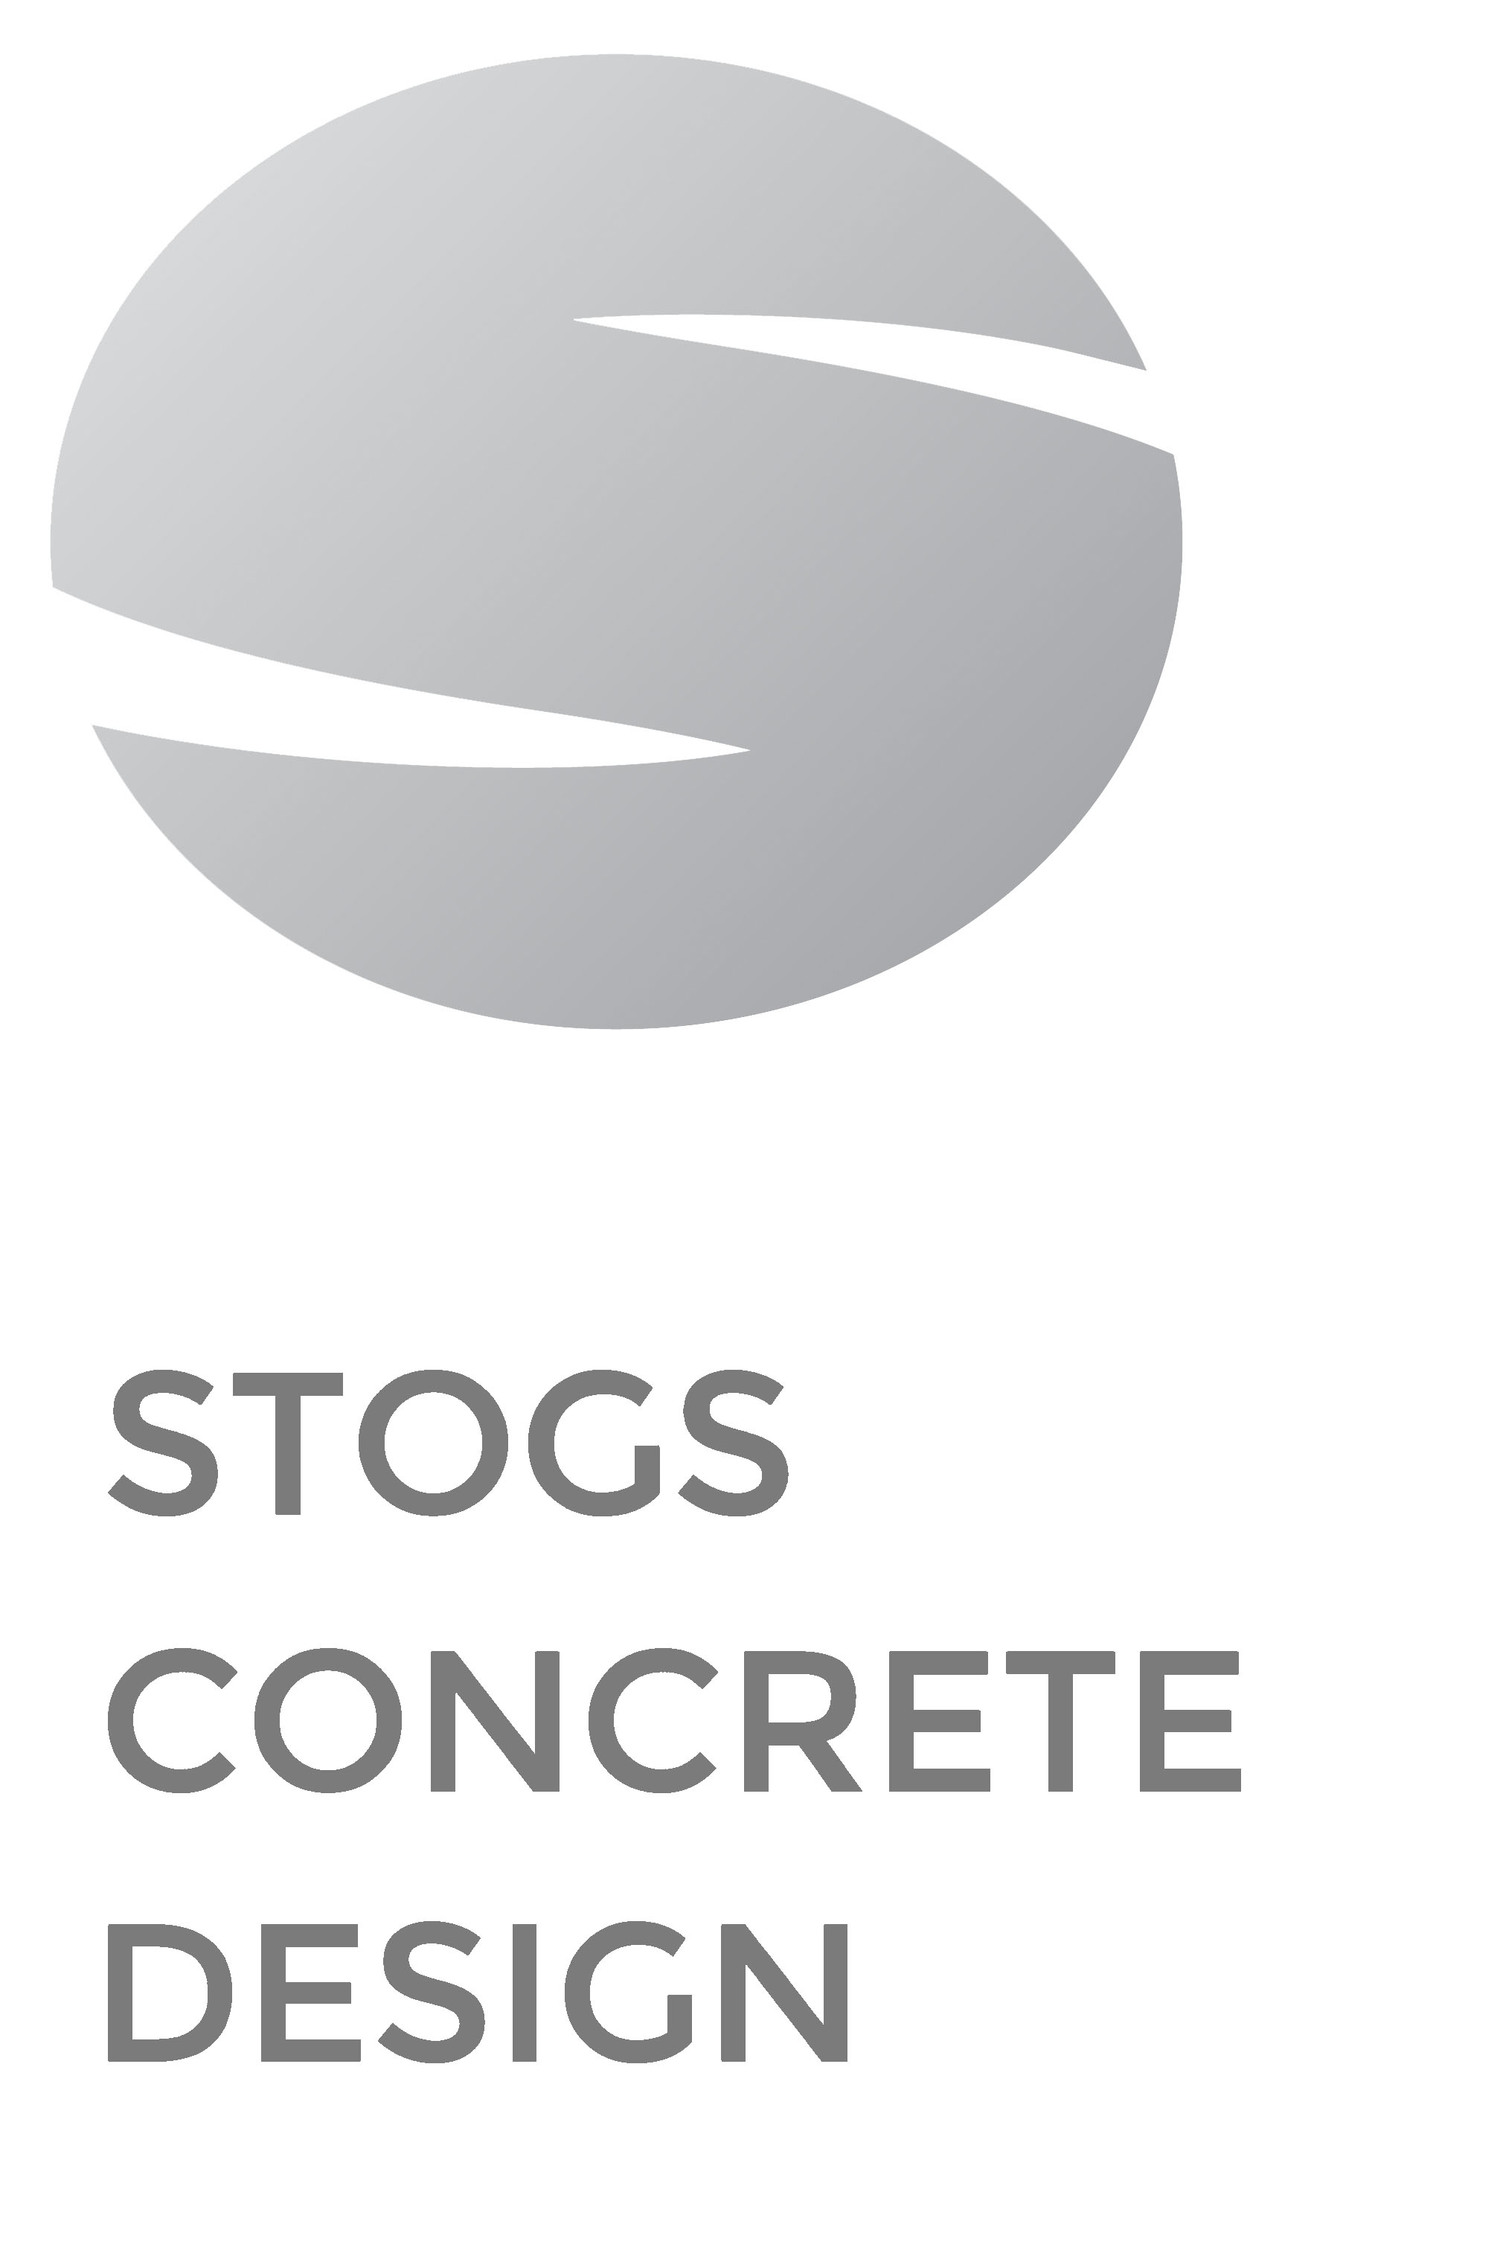 Stogs Concrete Design